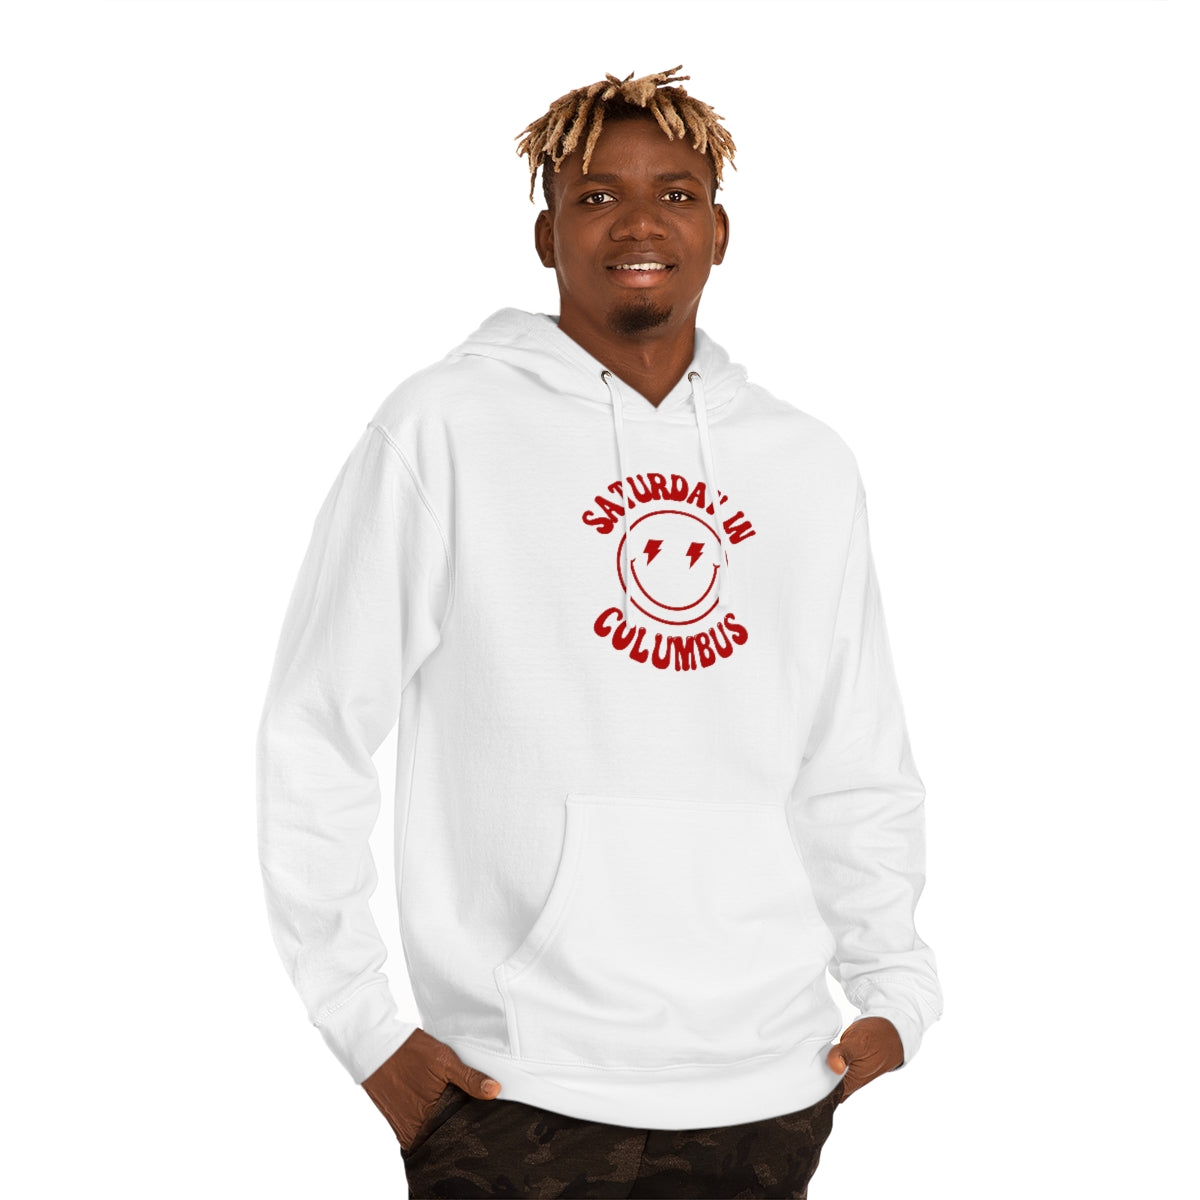 Smiley Columbus Hooded Sweatshirt - GG - ITC